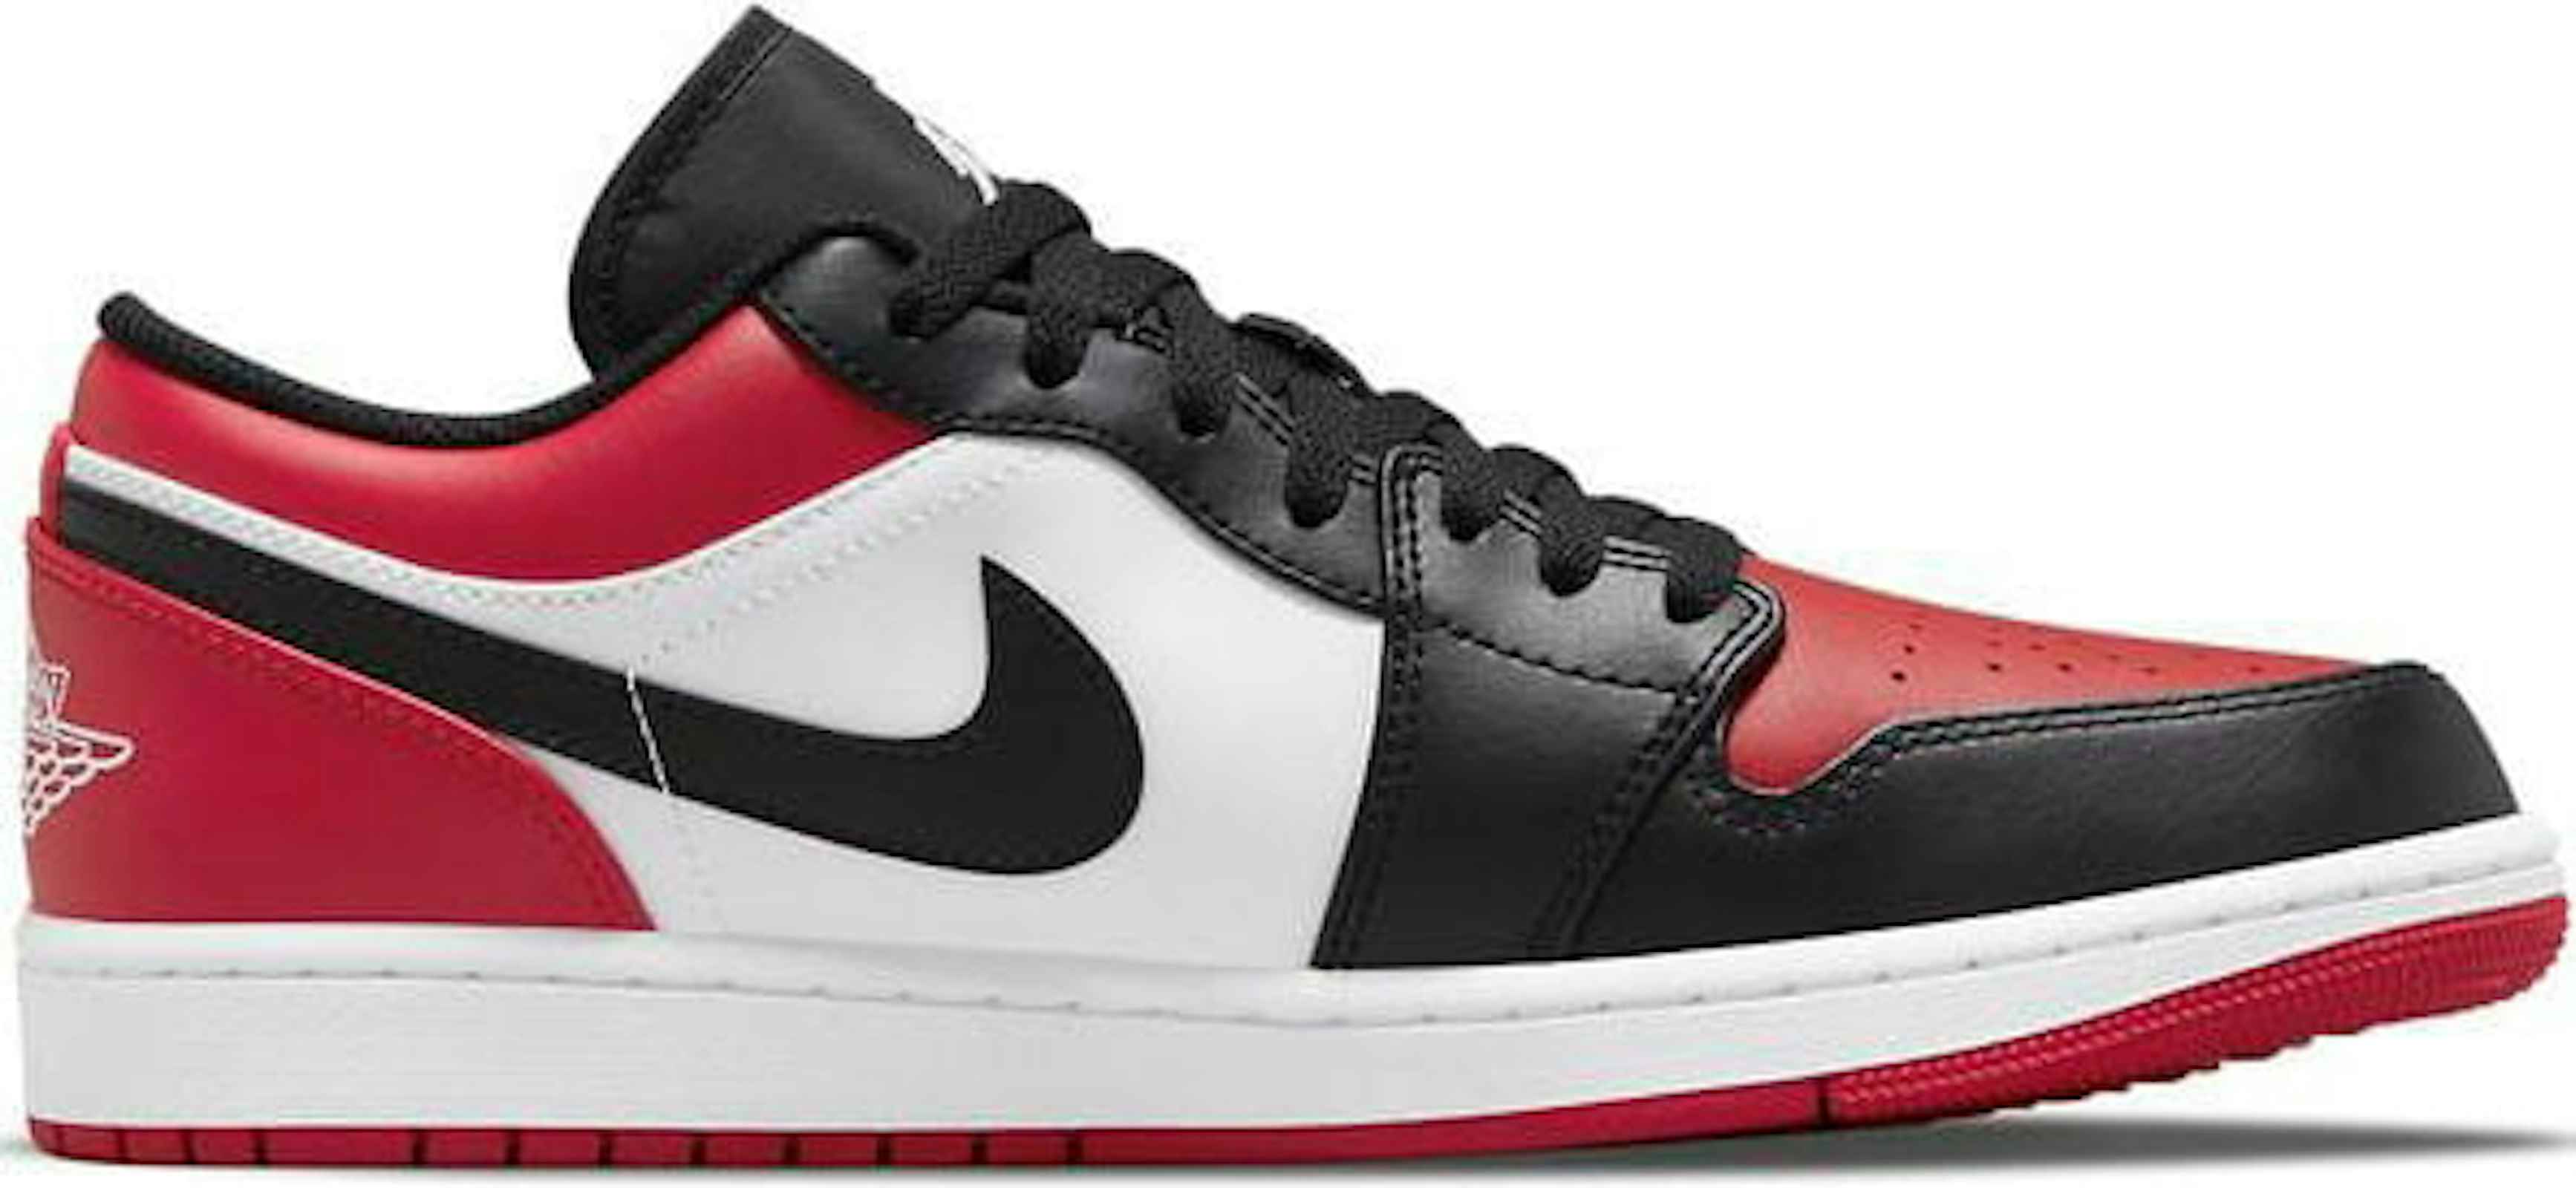 Air Jordan 1 Low "Bred Toe" | 553558-612 | Sneaker Squad